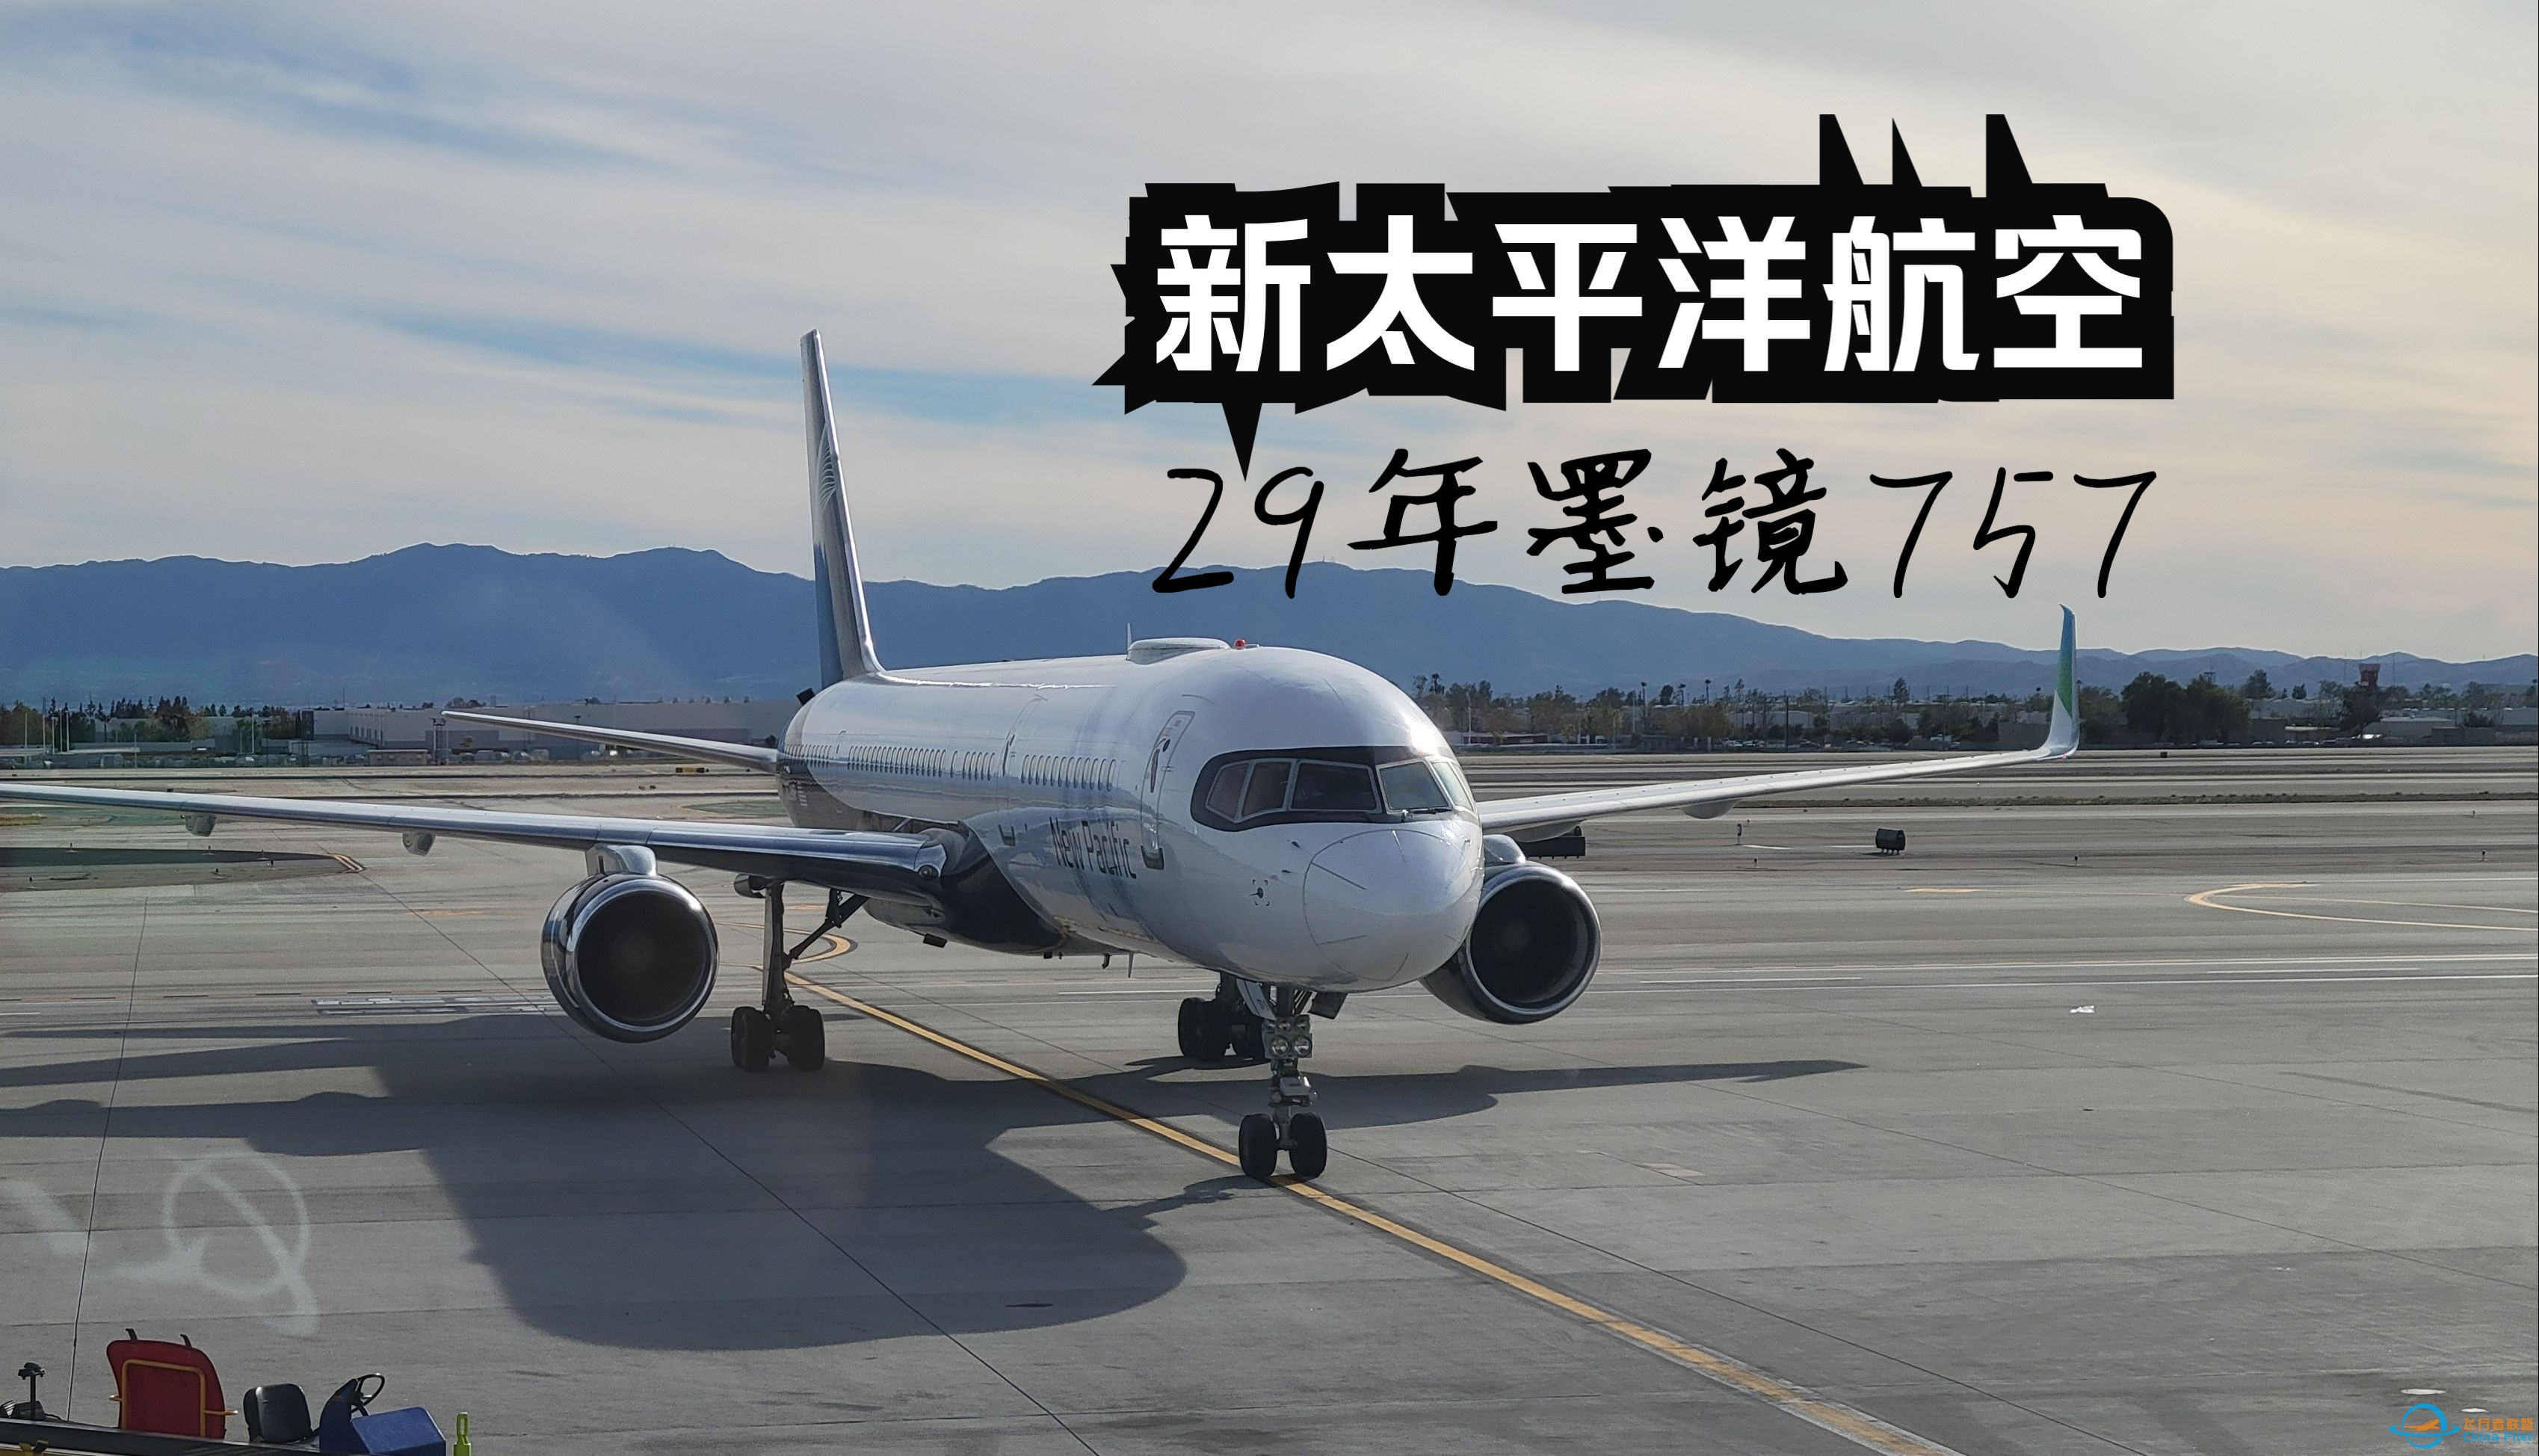 【飞行游记】当全新跨太平洋公司遇上墨镜757？全站首发新太平洋航空波音757超级经济舱体验-382 